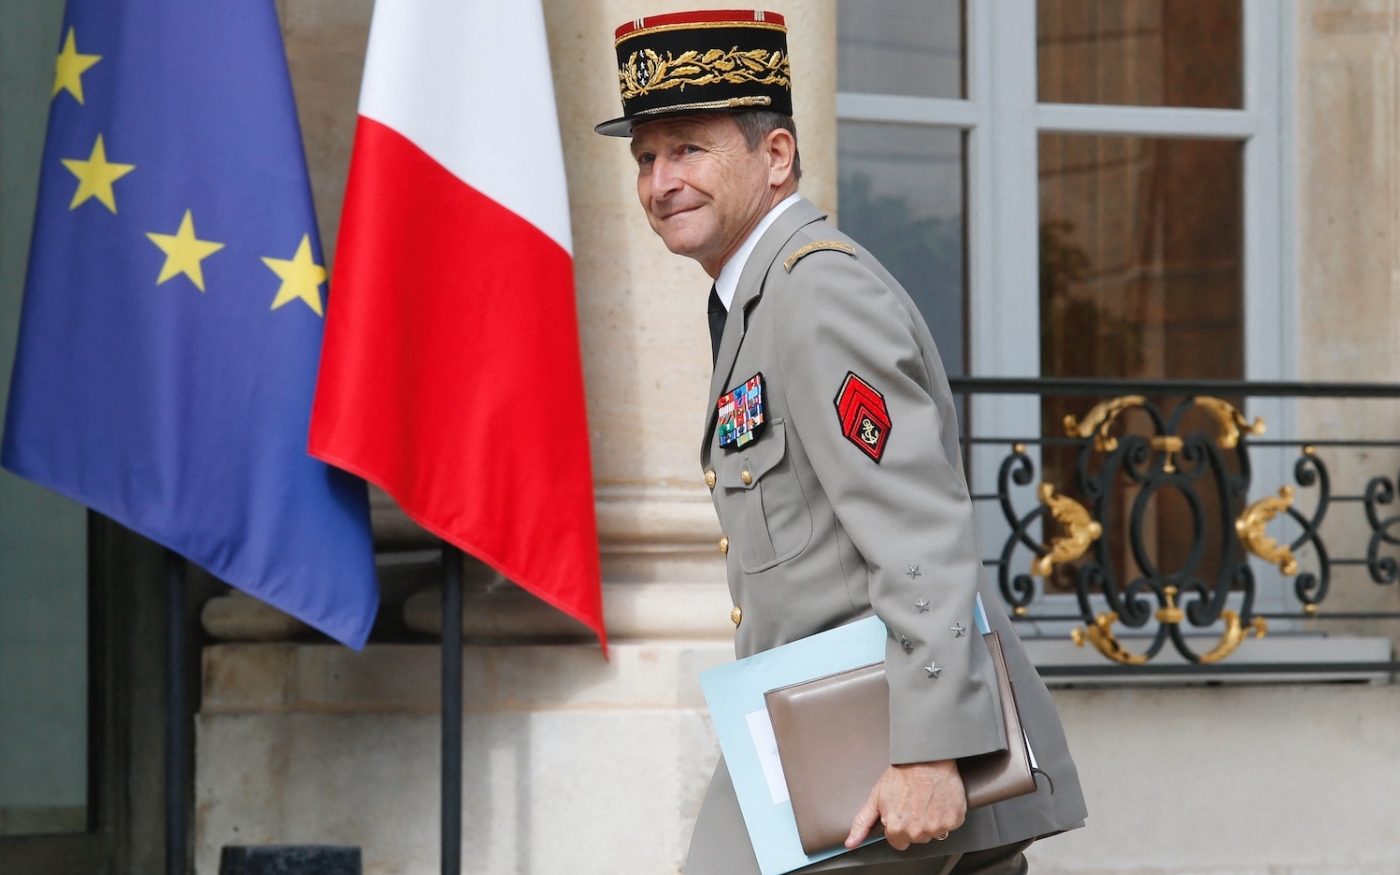 Le général Pierre de Villiers, arrive pour un sommet annuel franco-allemand au palais de l’Élysée à Paris, le 13 juillet 2017 (AFP)